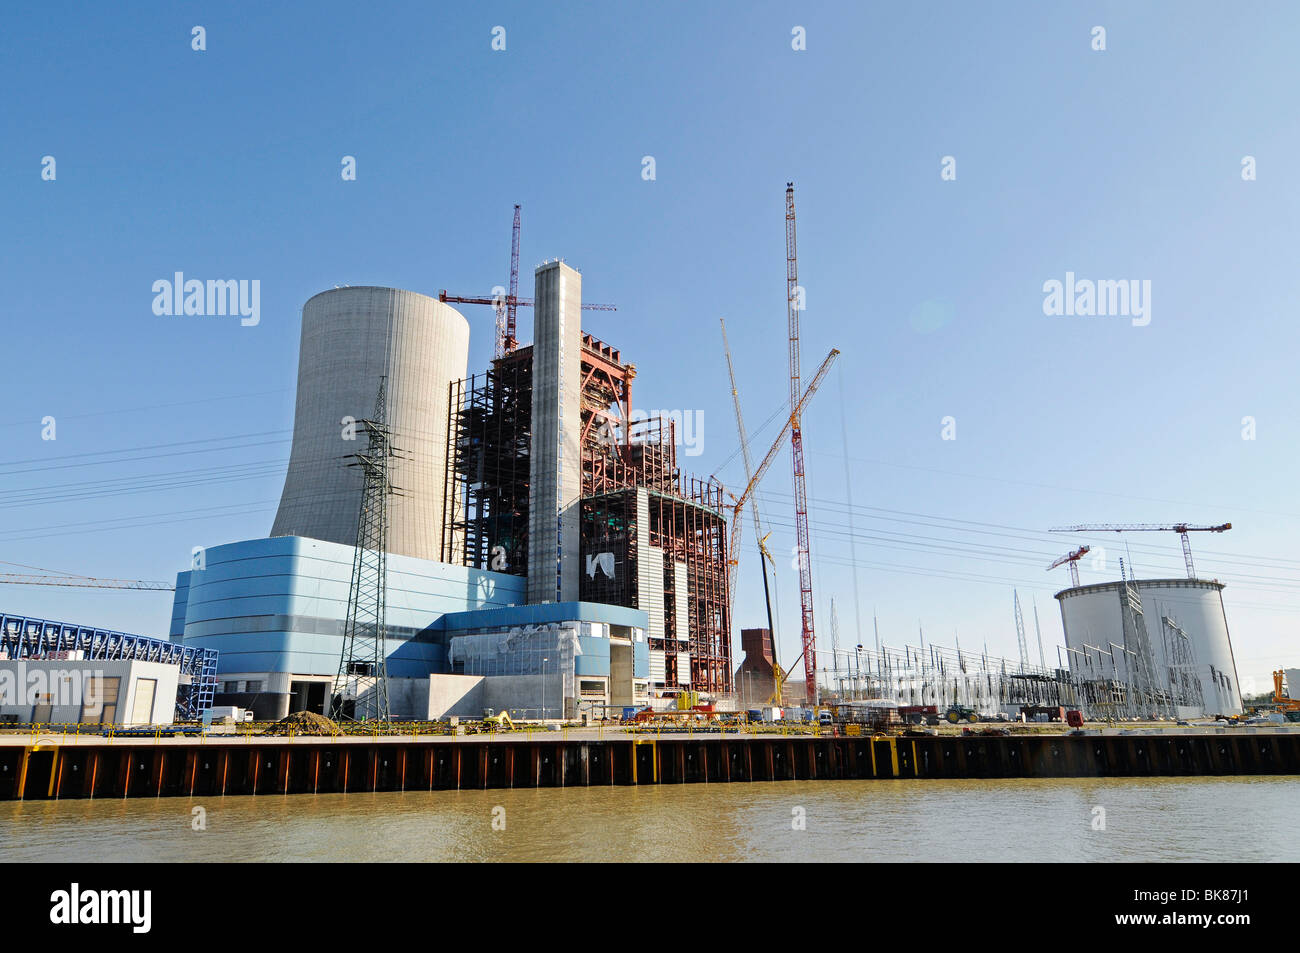 Edificio di nuova costruzione, sito in costruzione, carbone power station, torre di raffreddamento, E.ON AG, Datteln, Dortmund Ems Canal, Nord Rhine-Westphali Foto Stock